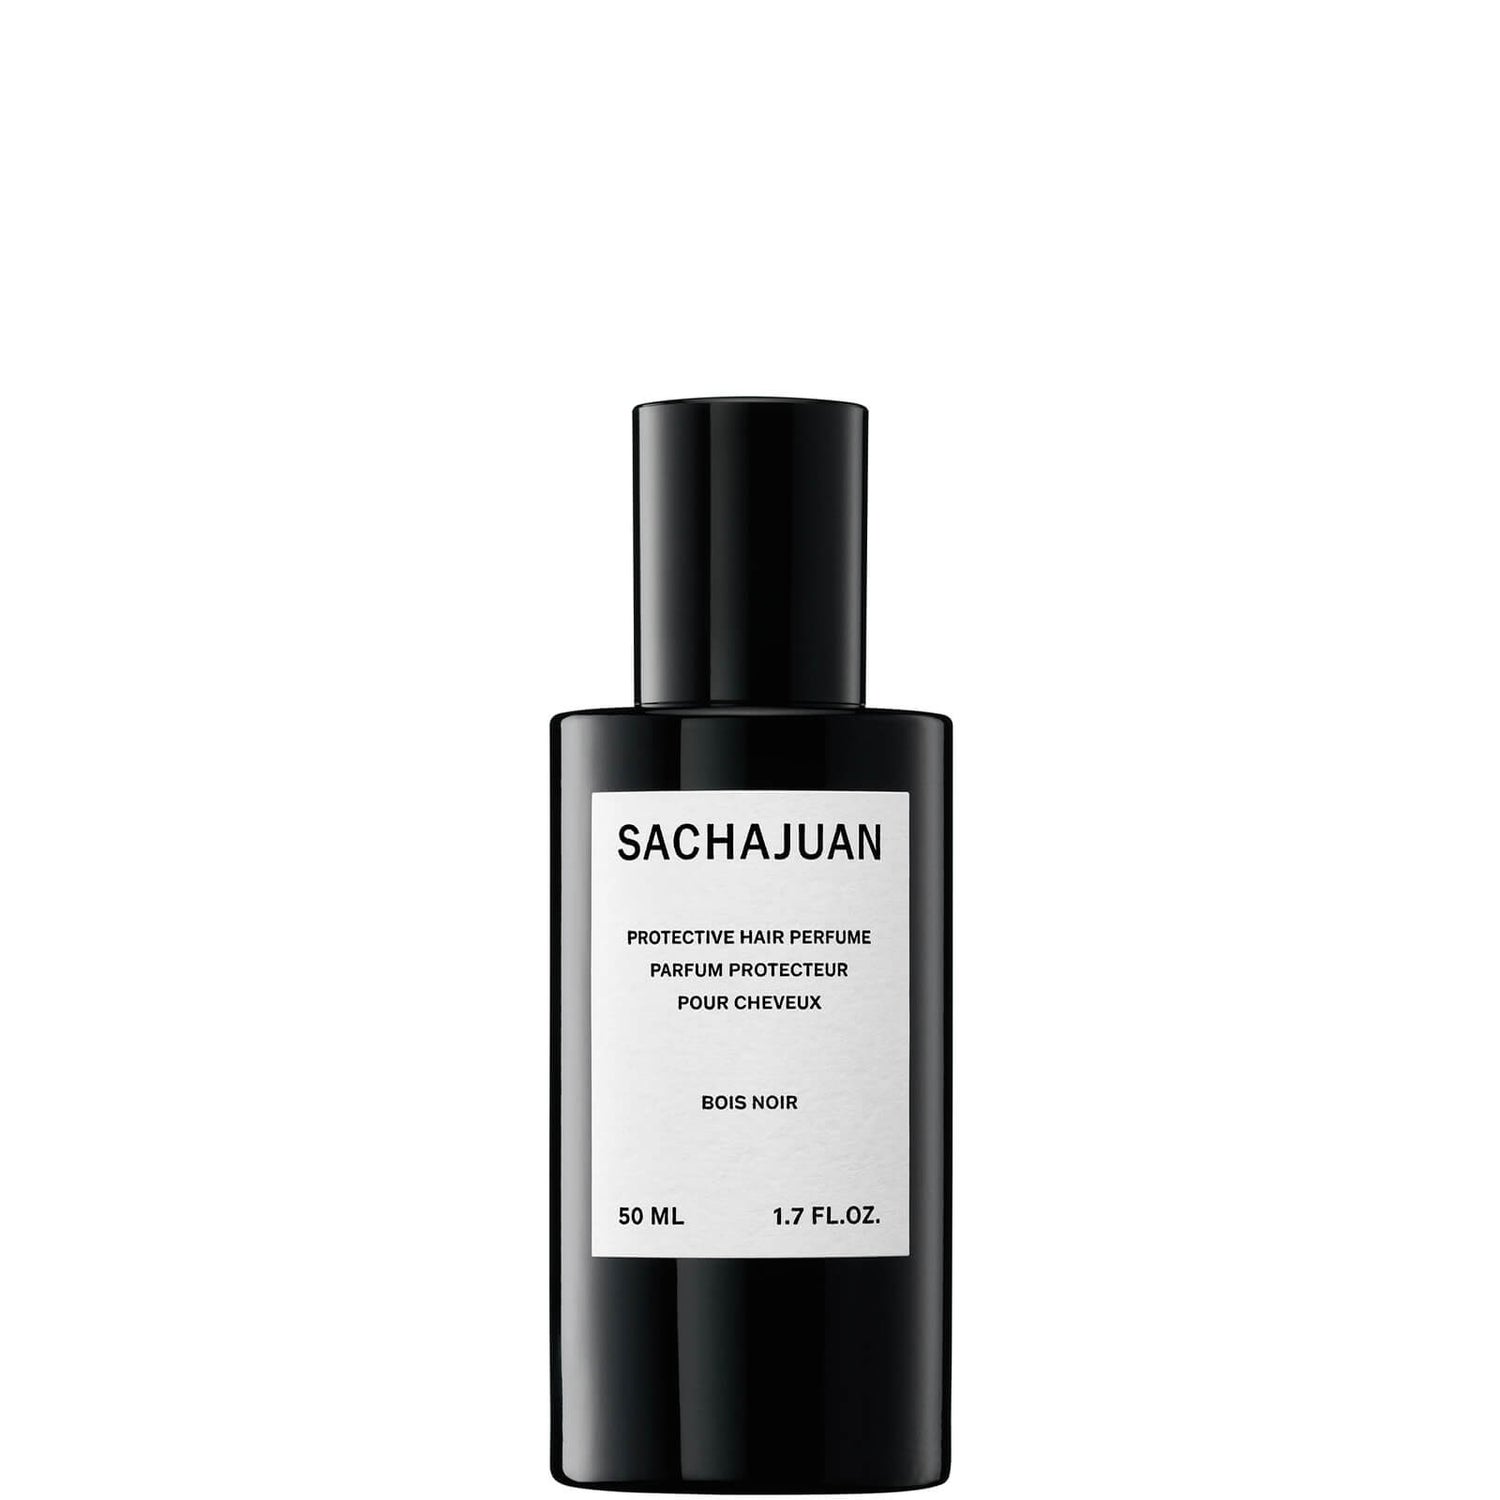 Perfume para Cabelo Protetor da Sachajuan 50 ml